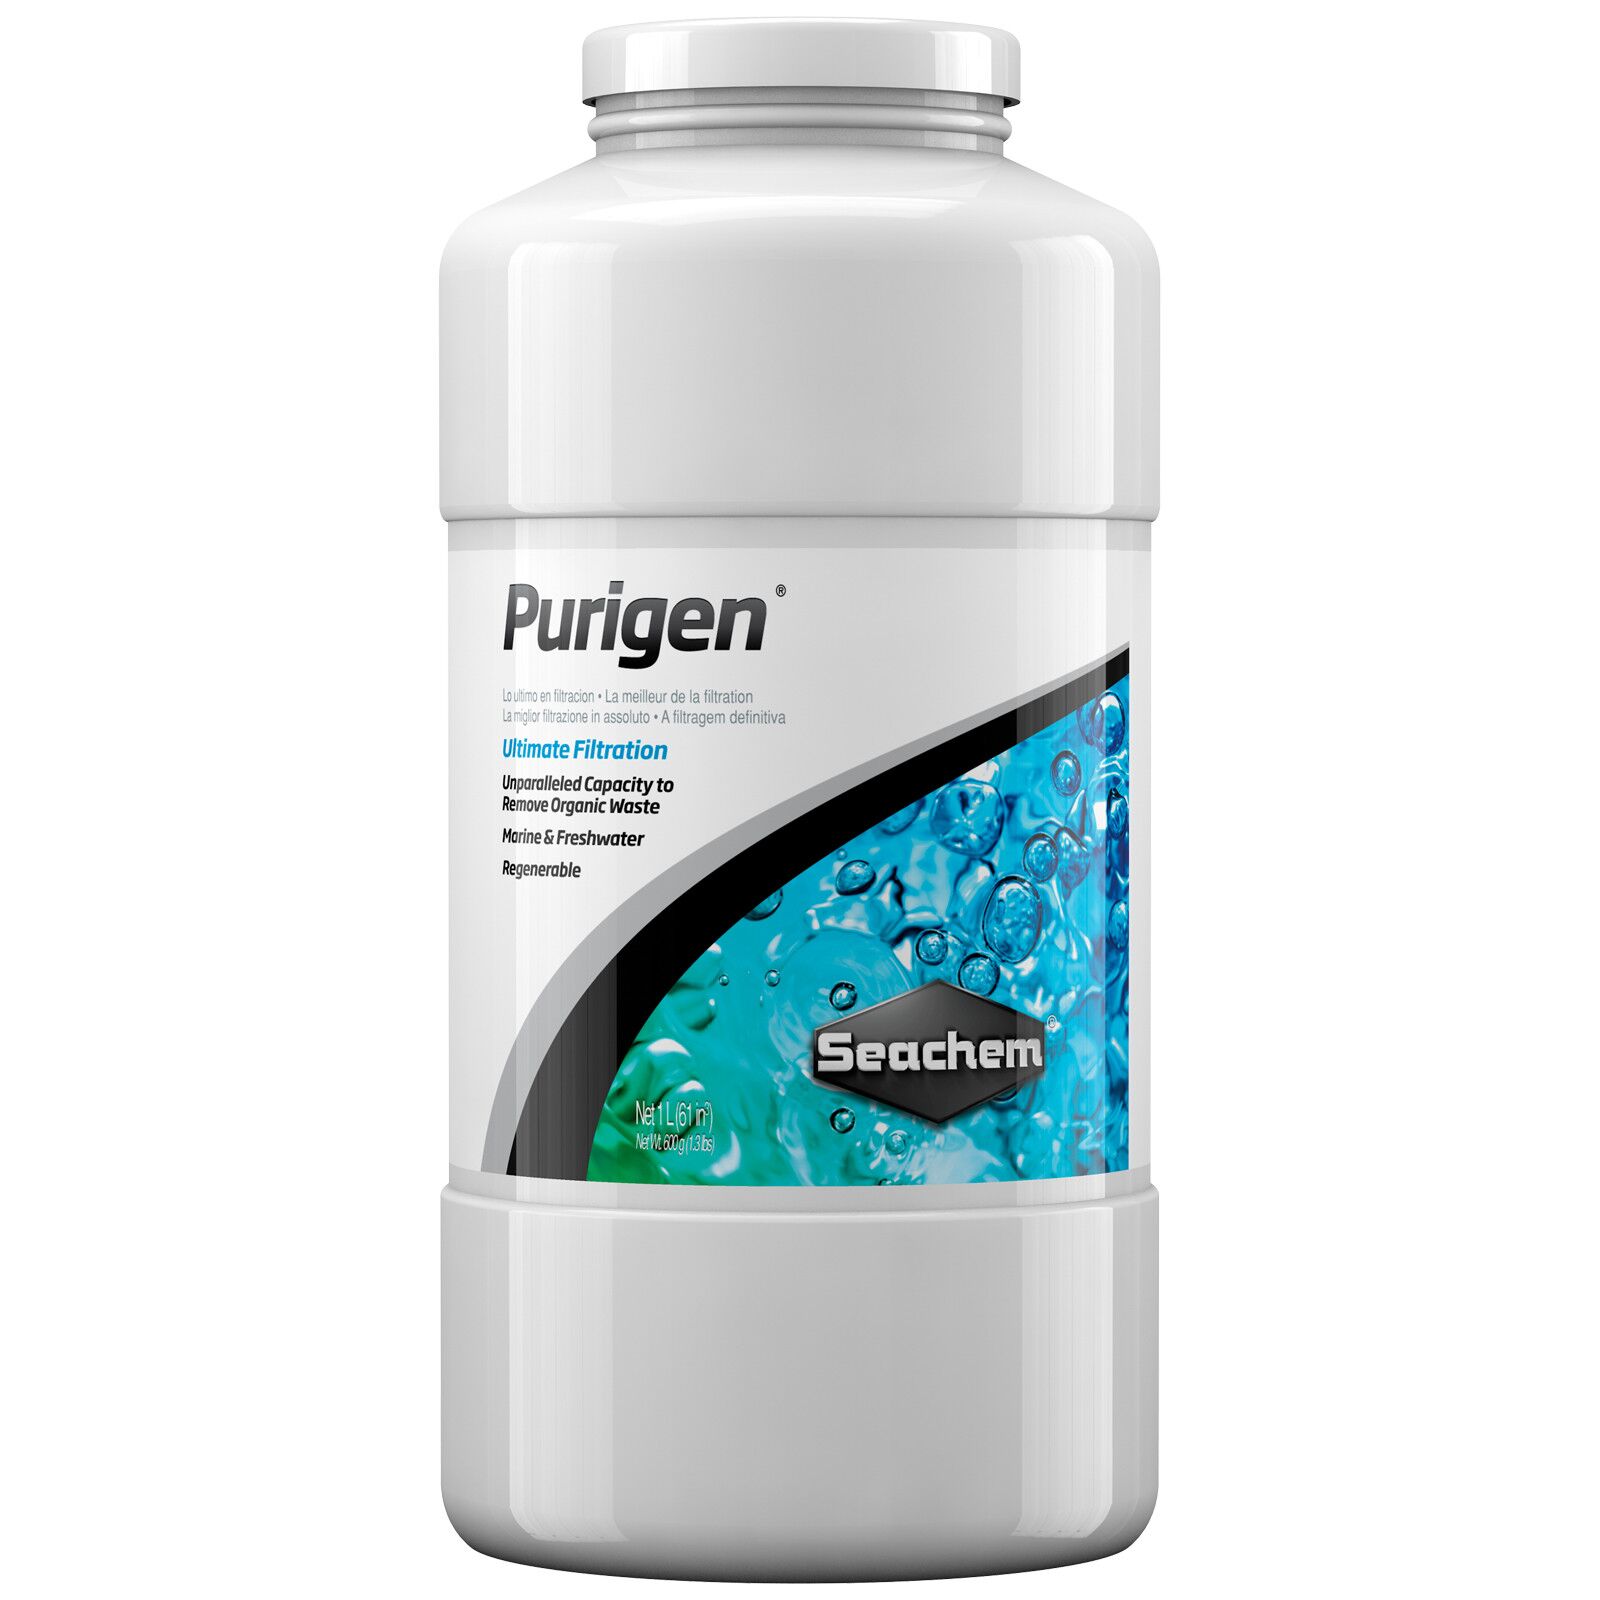 Seachem - Purigen - 100 ml in a bag | Aquasabi - Aquascaping Shop